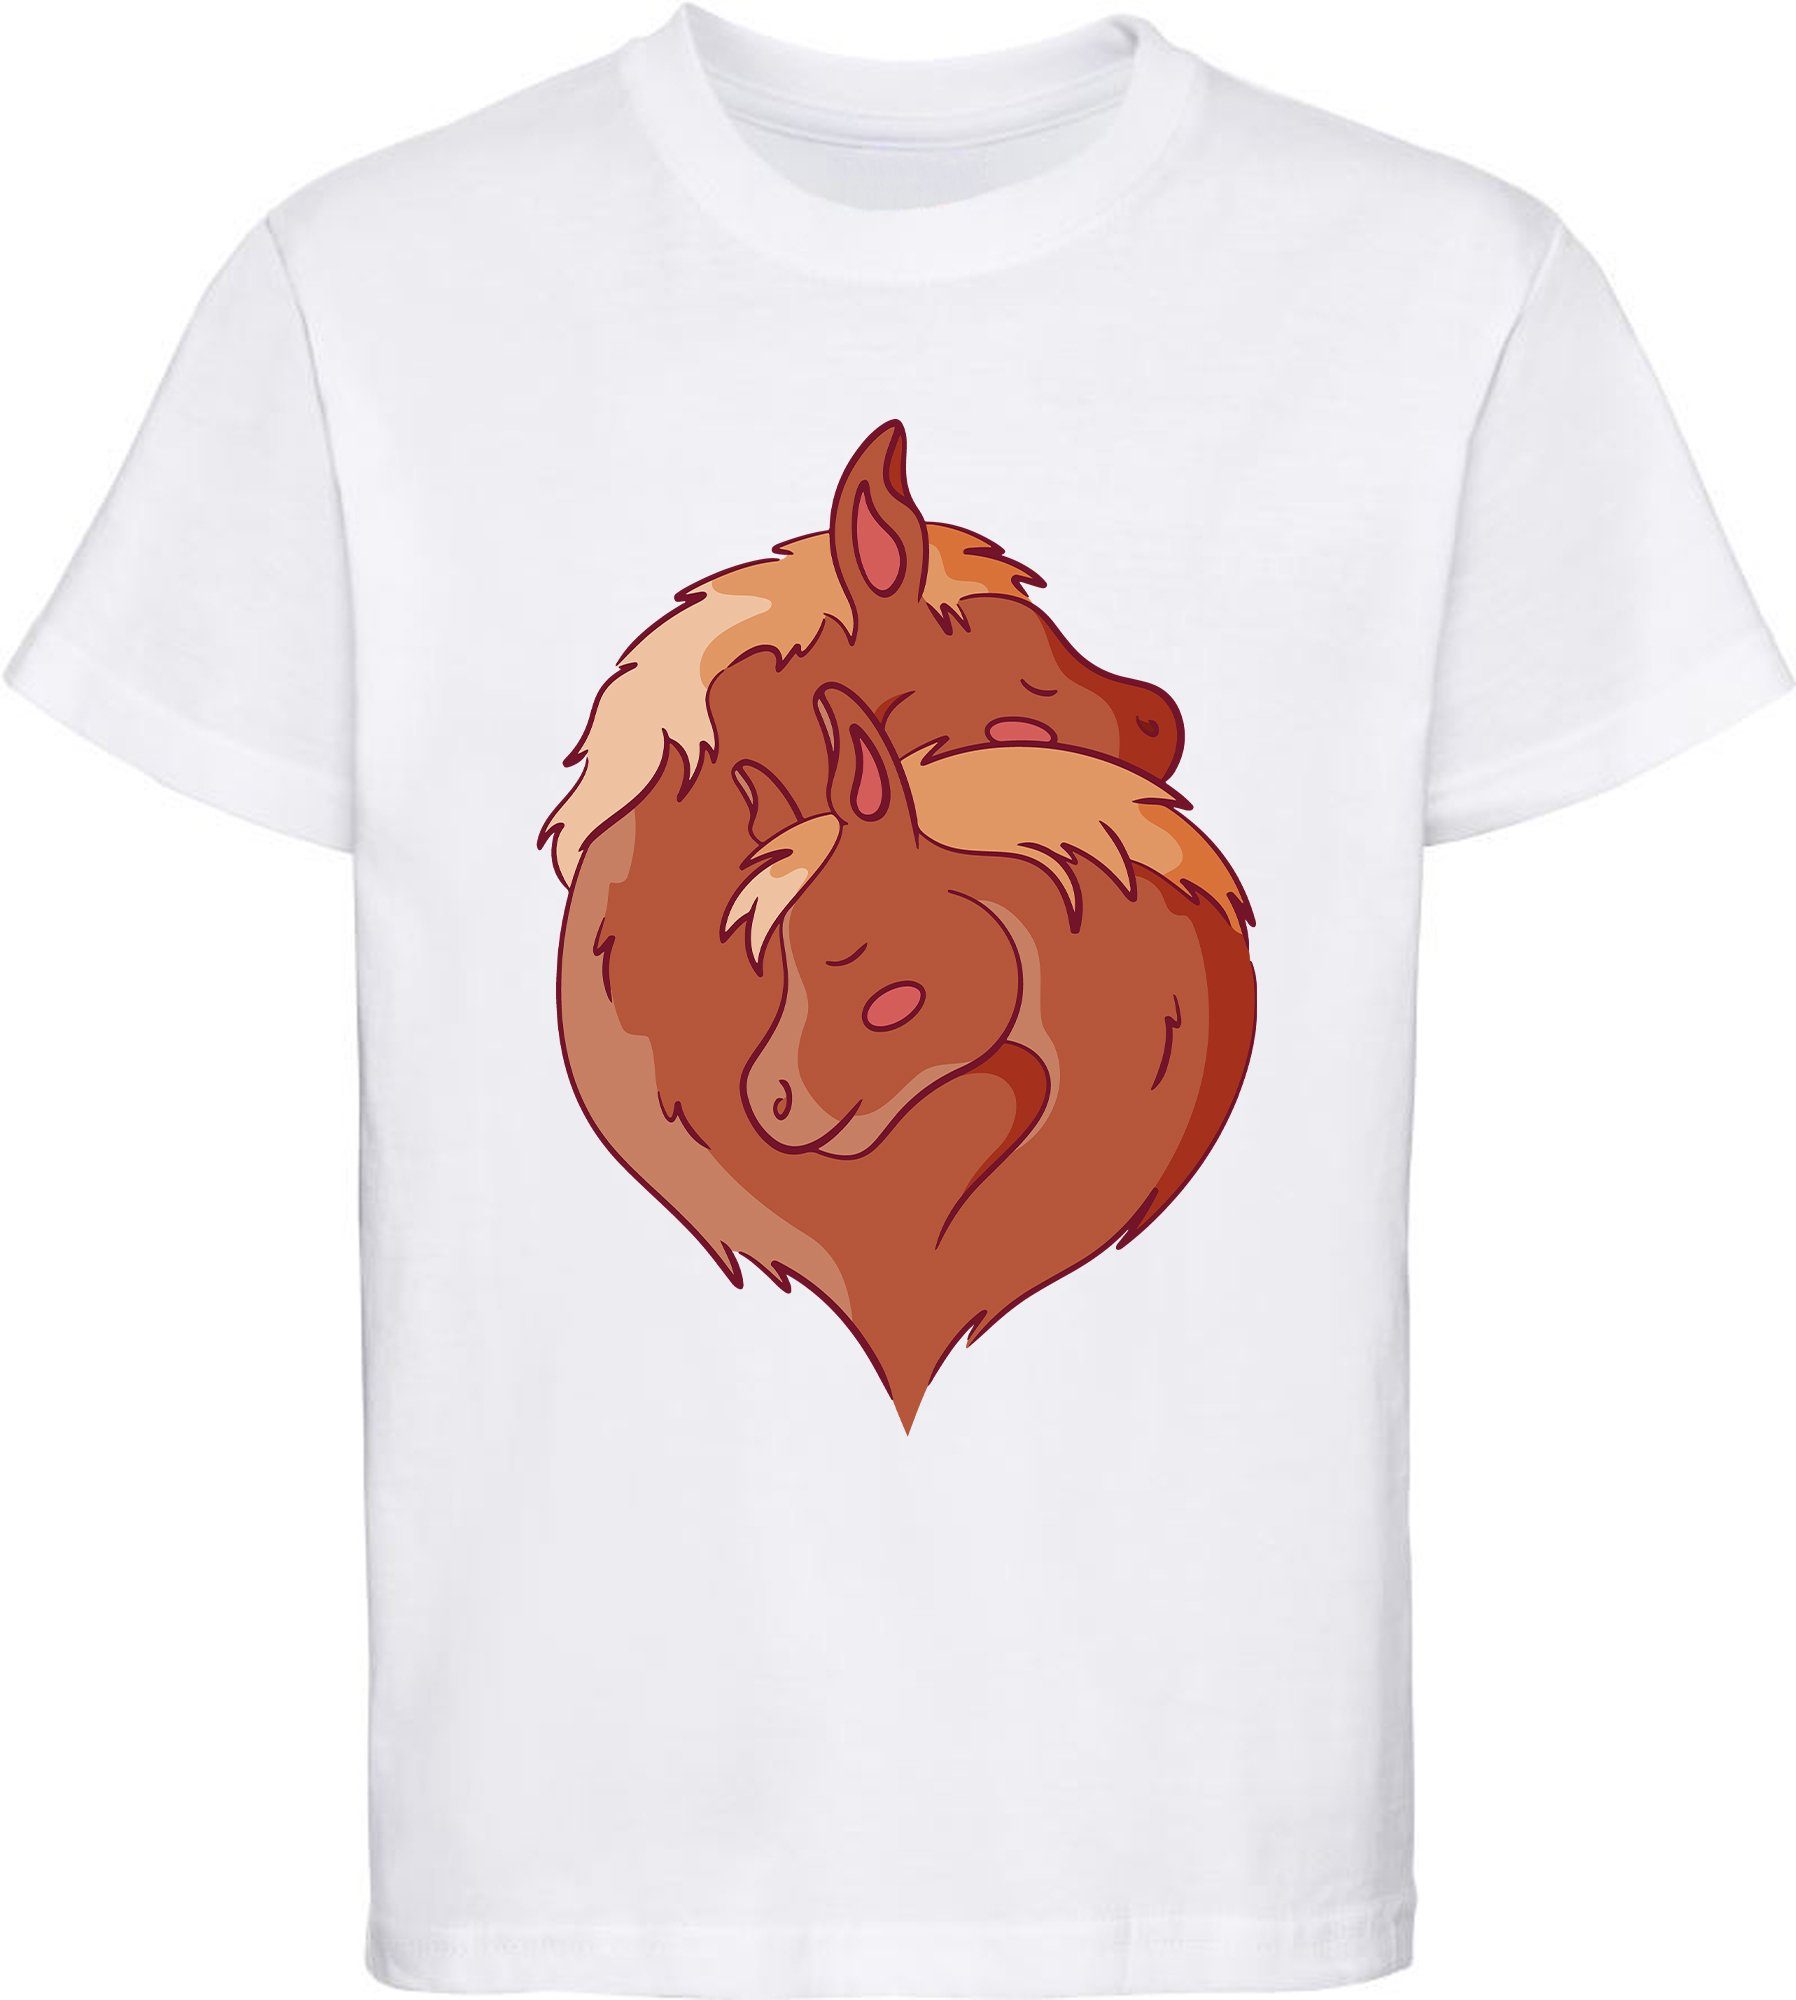 MyDesign24 Print-Shirt bedrucktes Mädchen T-Shirt zwei kuschelnde Pferde im Yin Yang Stil Baumwollshirt mit Aufdruck, i152 weiss